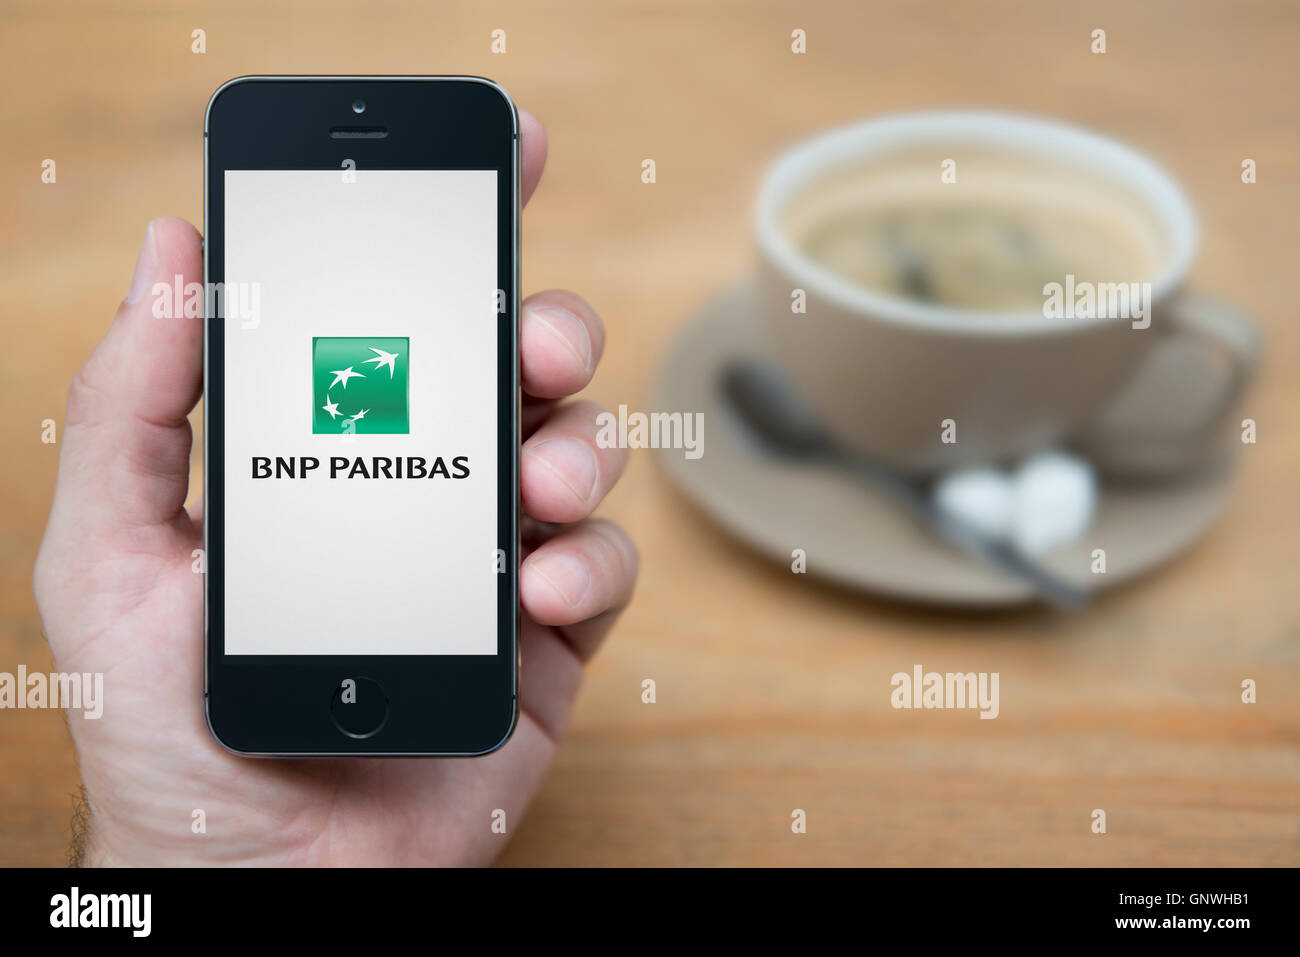 Un hombre mira el iPhone que muestra el logotipo del banco BNP Paribas, mientras se sentó con una taza de café (uso Editorial solamente). Foto de stock